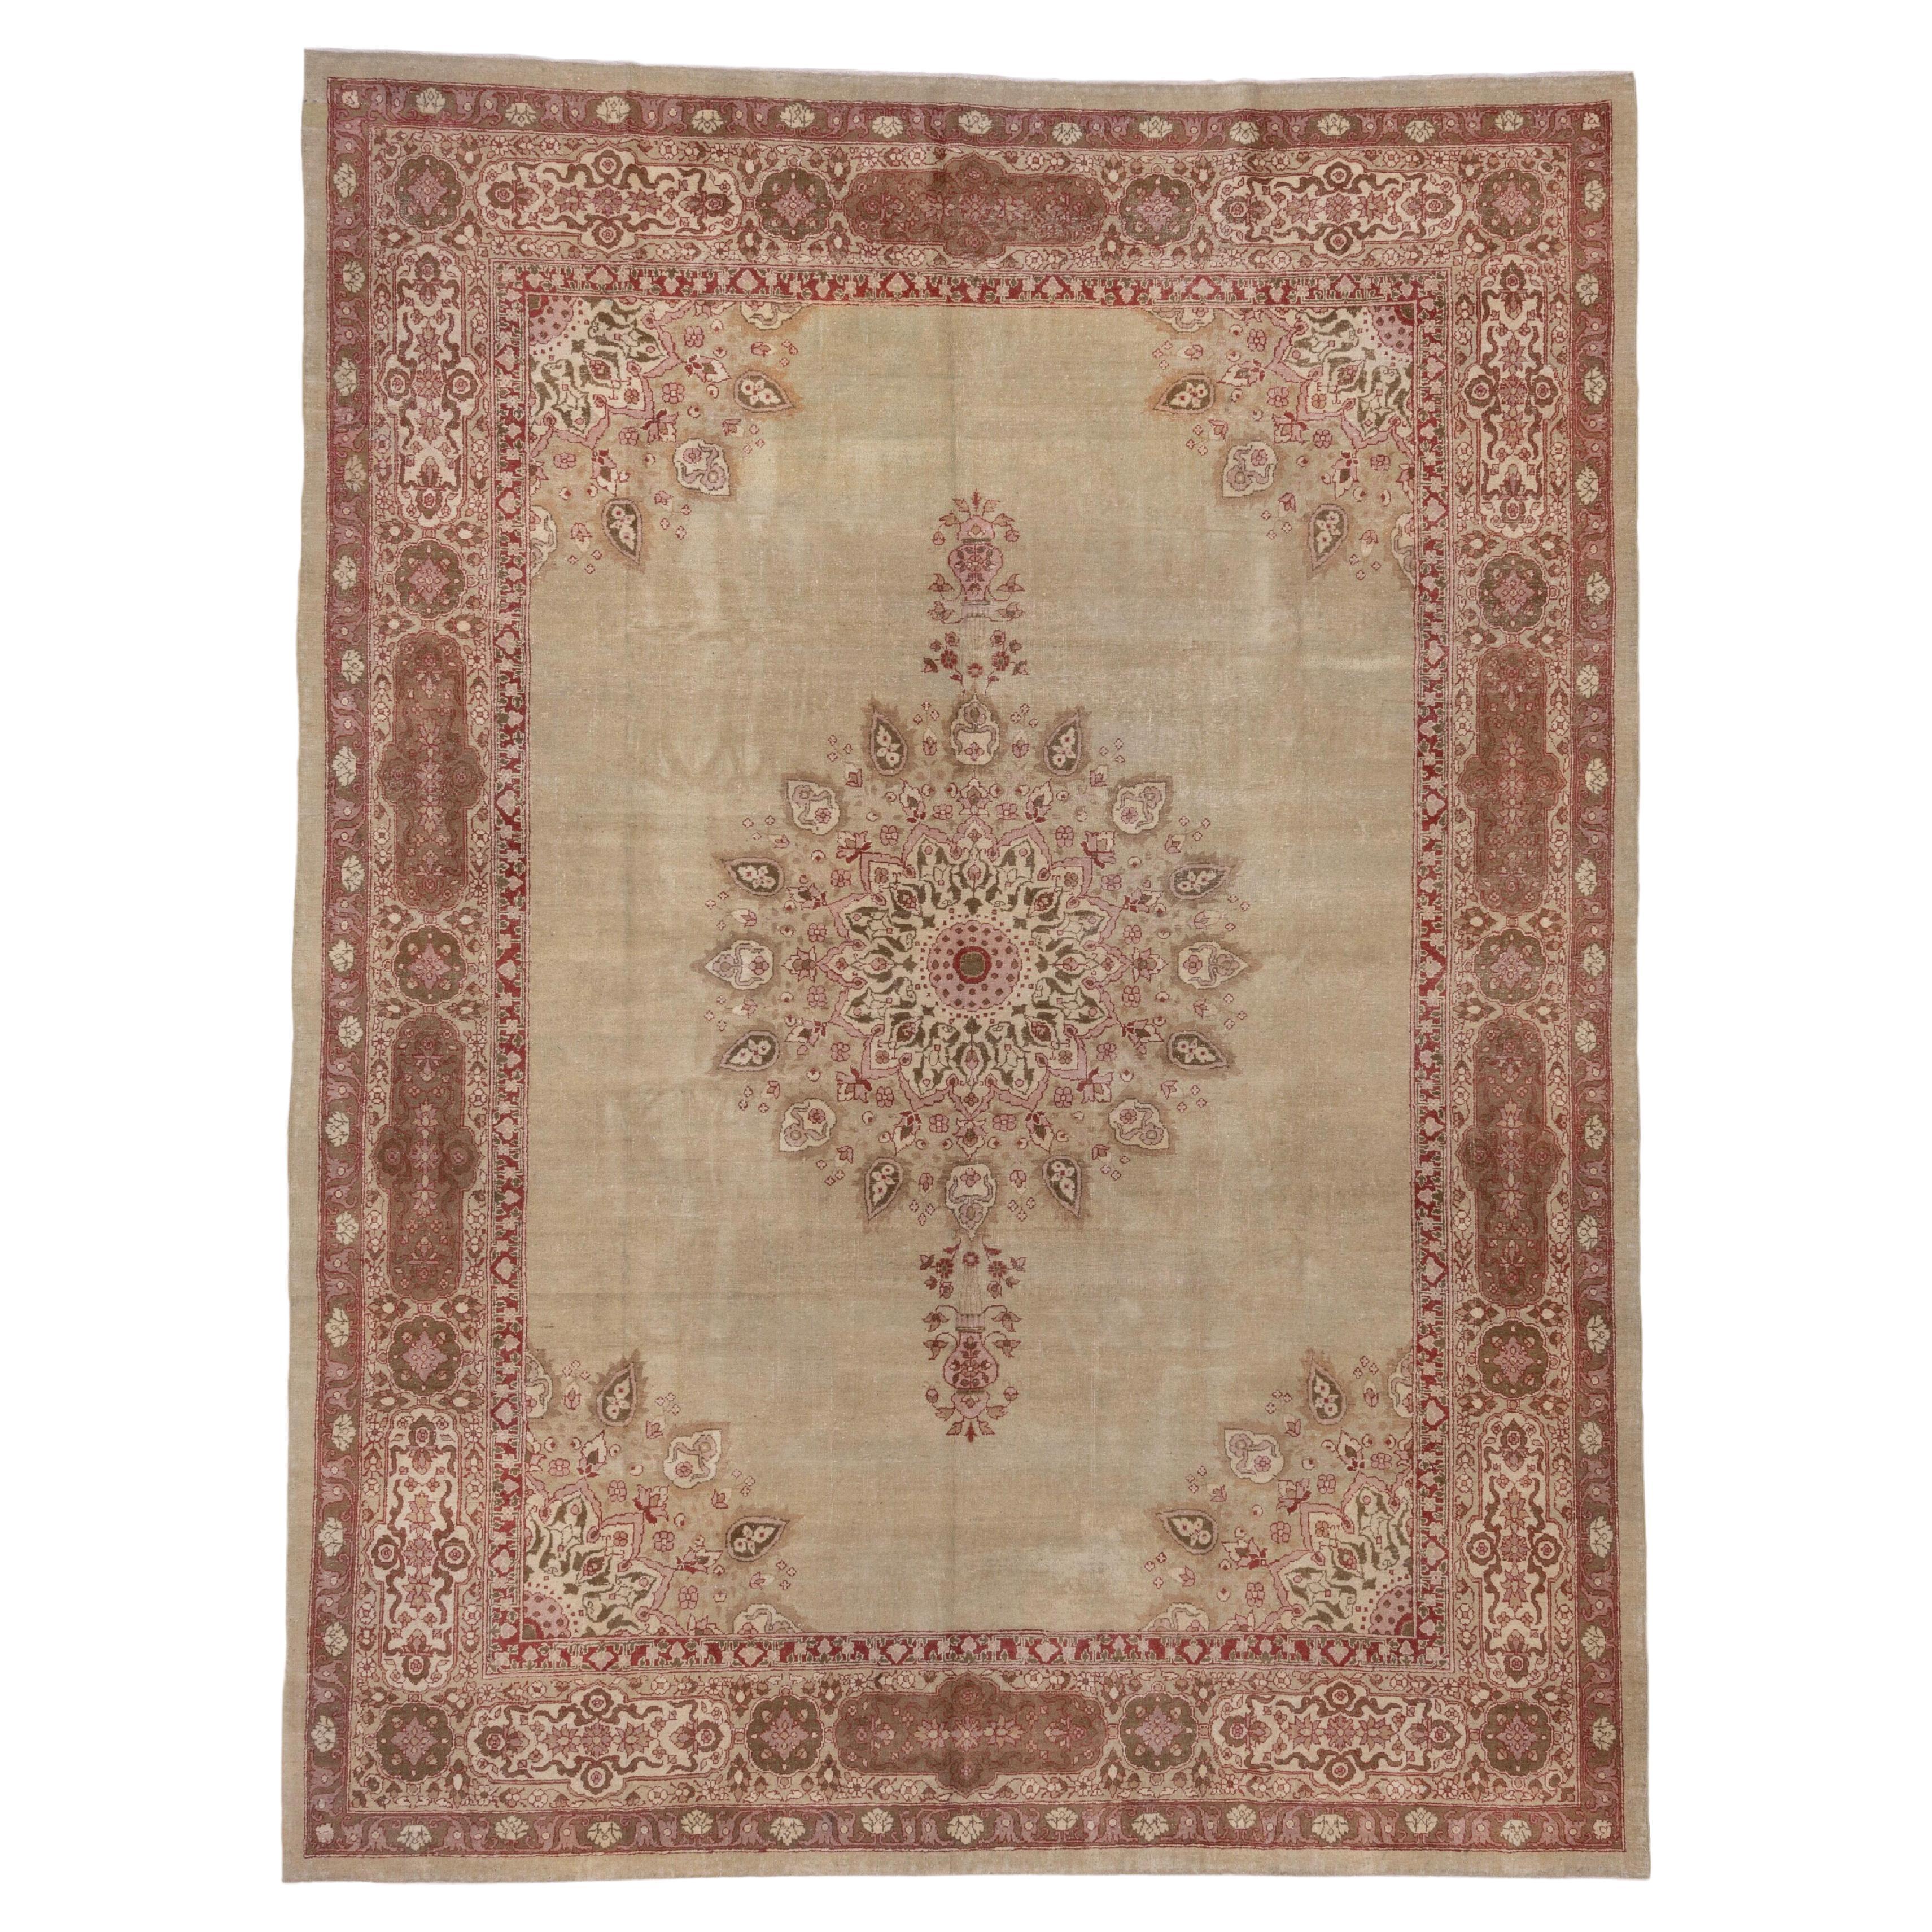 Antique Indian Amritzar Carpet, Circa 1920s